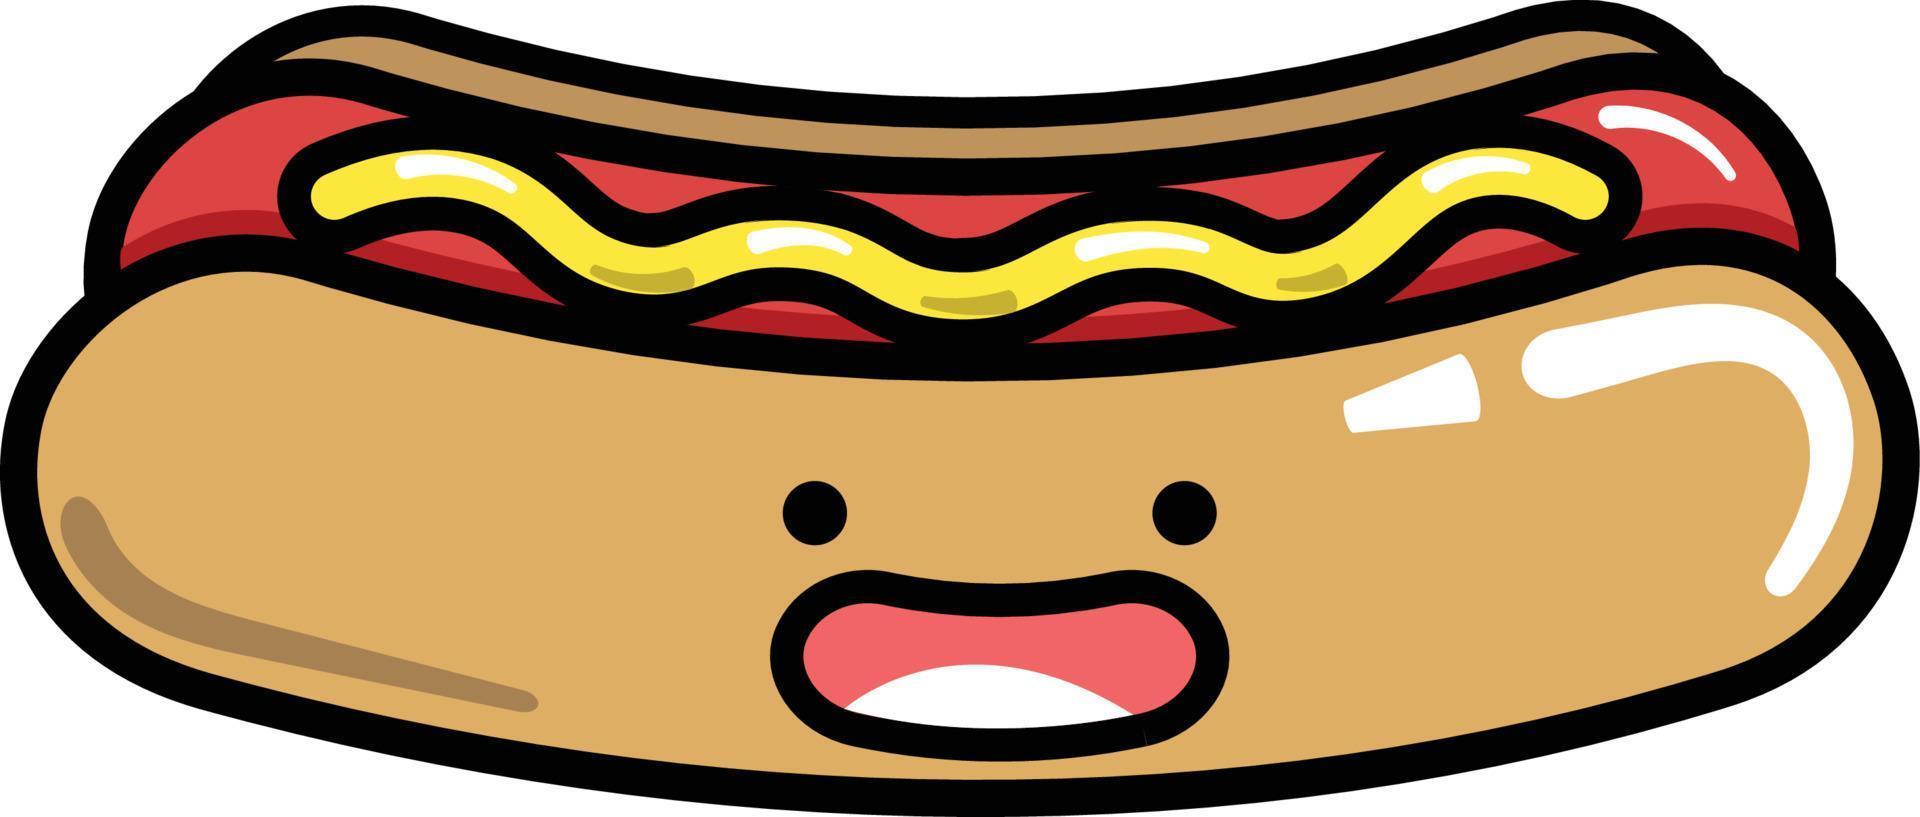 hotdog snel voedsel nemen uit nemen weg vector